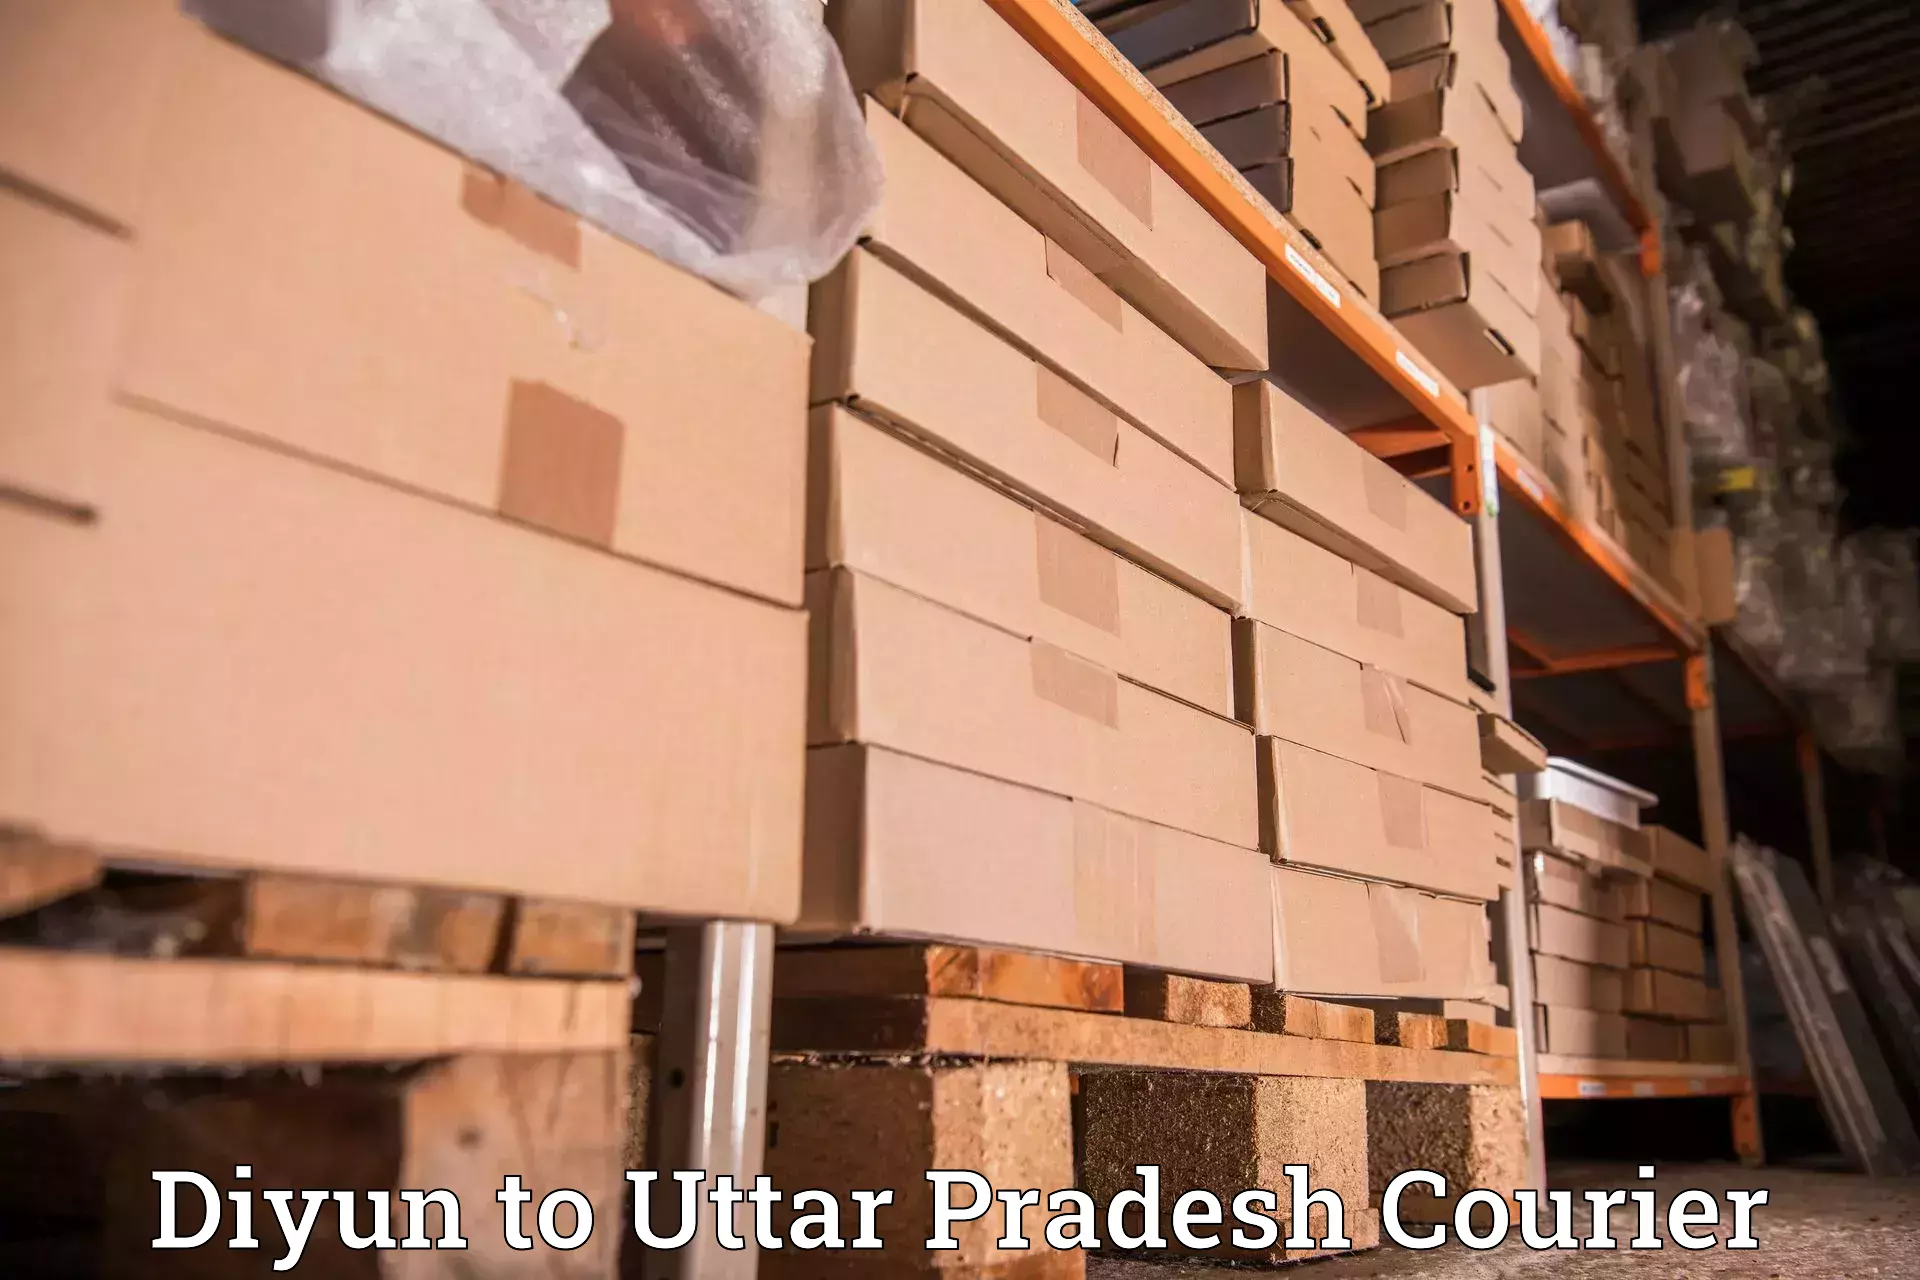 Automated parcel services Diyun to Varanasi